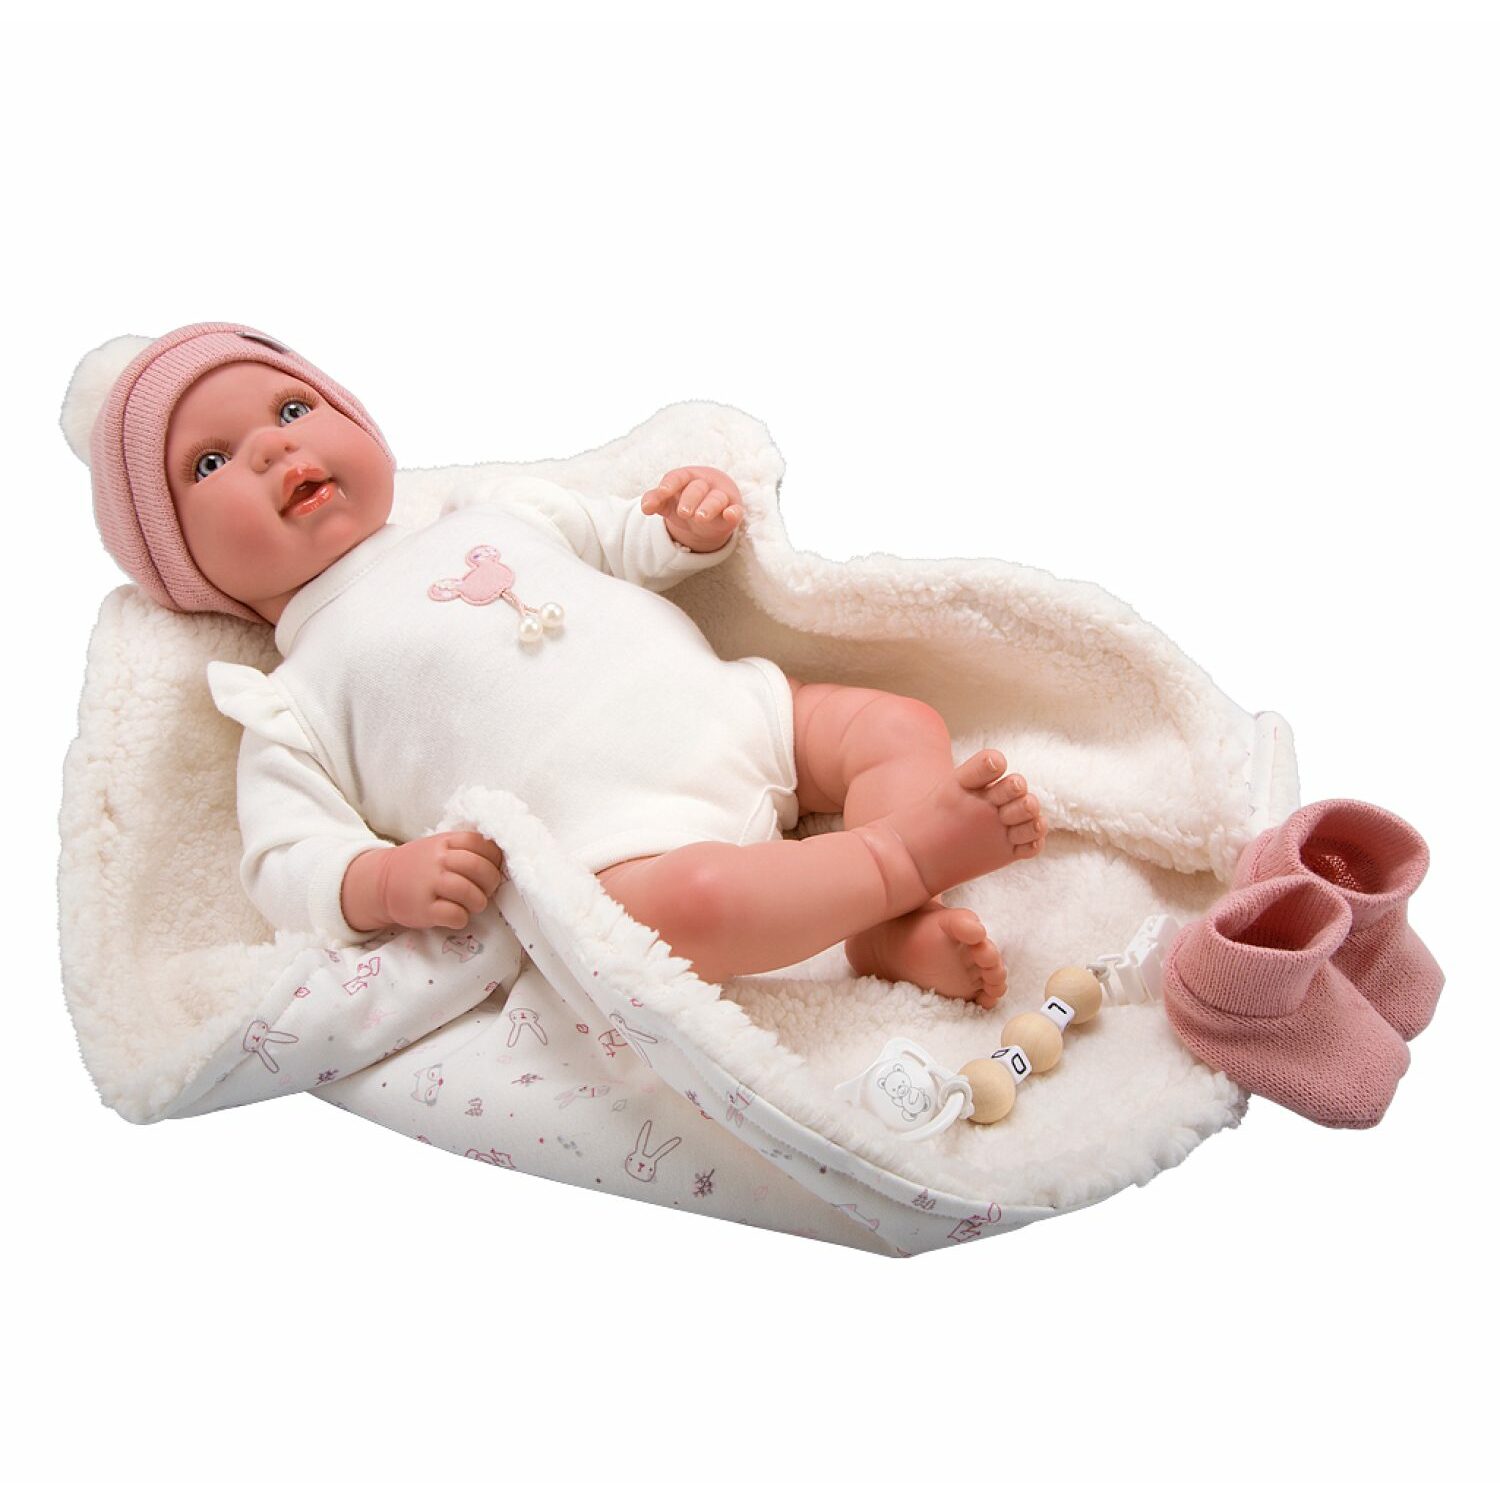 Кукла пупс Arias Реборн Ona новорожденный пупс мягкий 45 см реалистичный Т22938 - фото 4